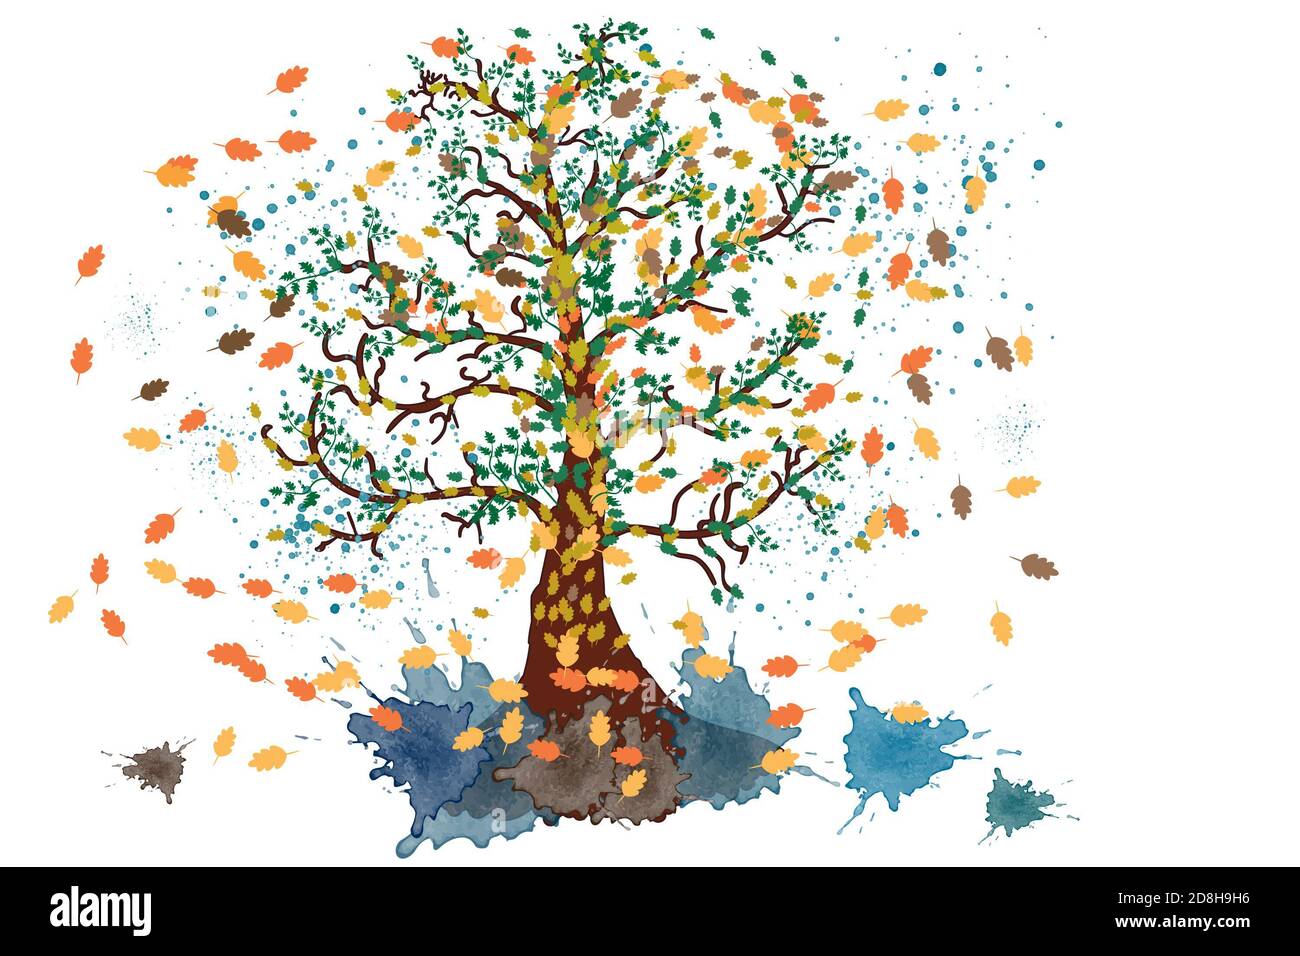 autumn illustration Stock Photo